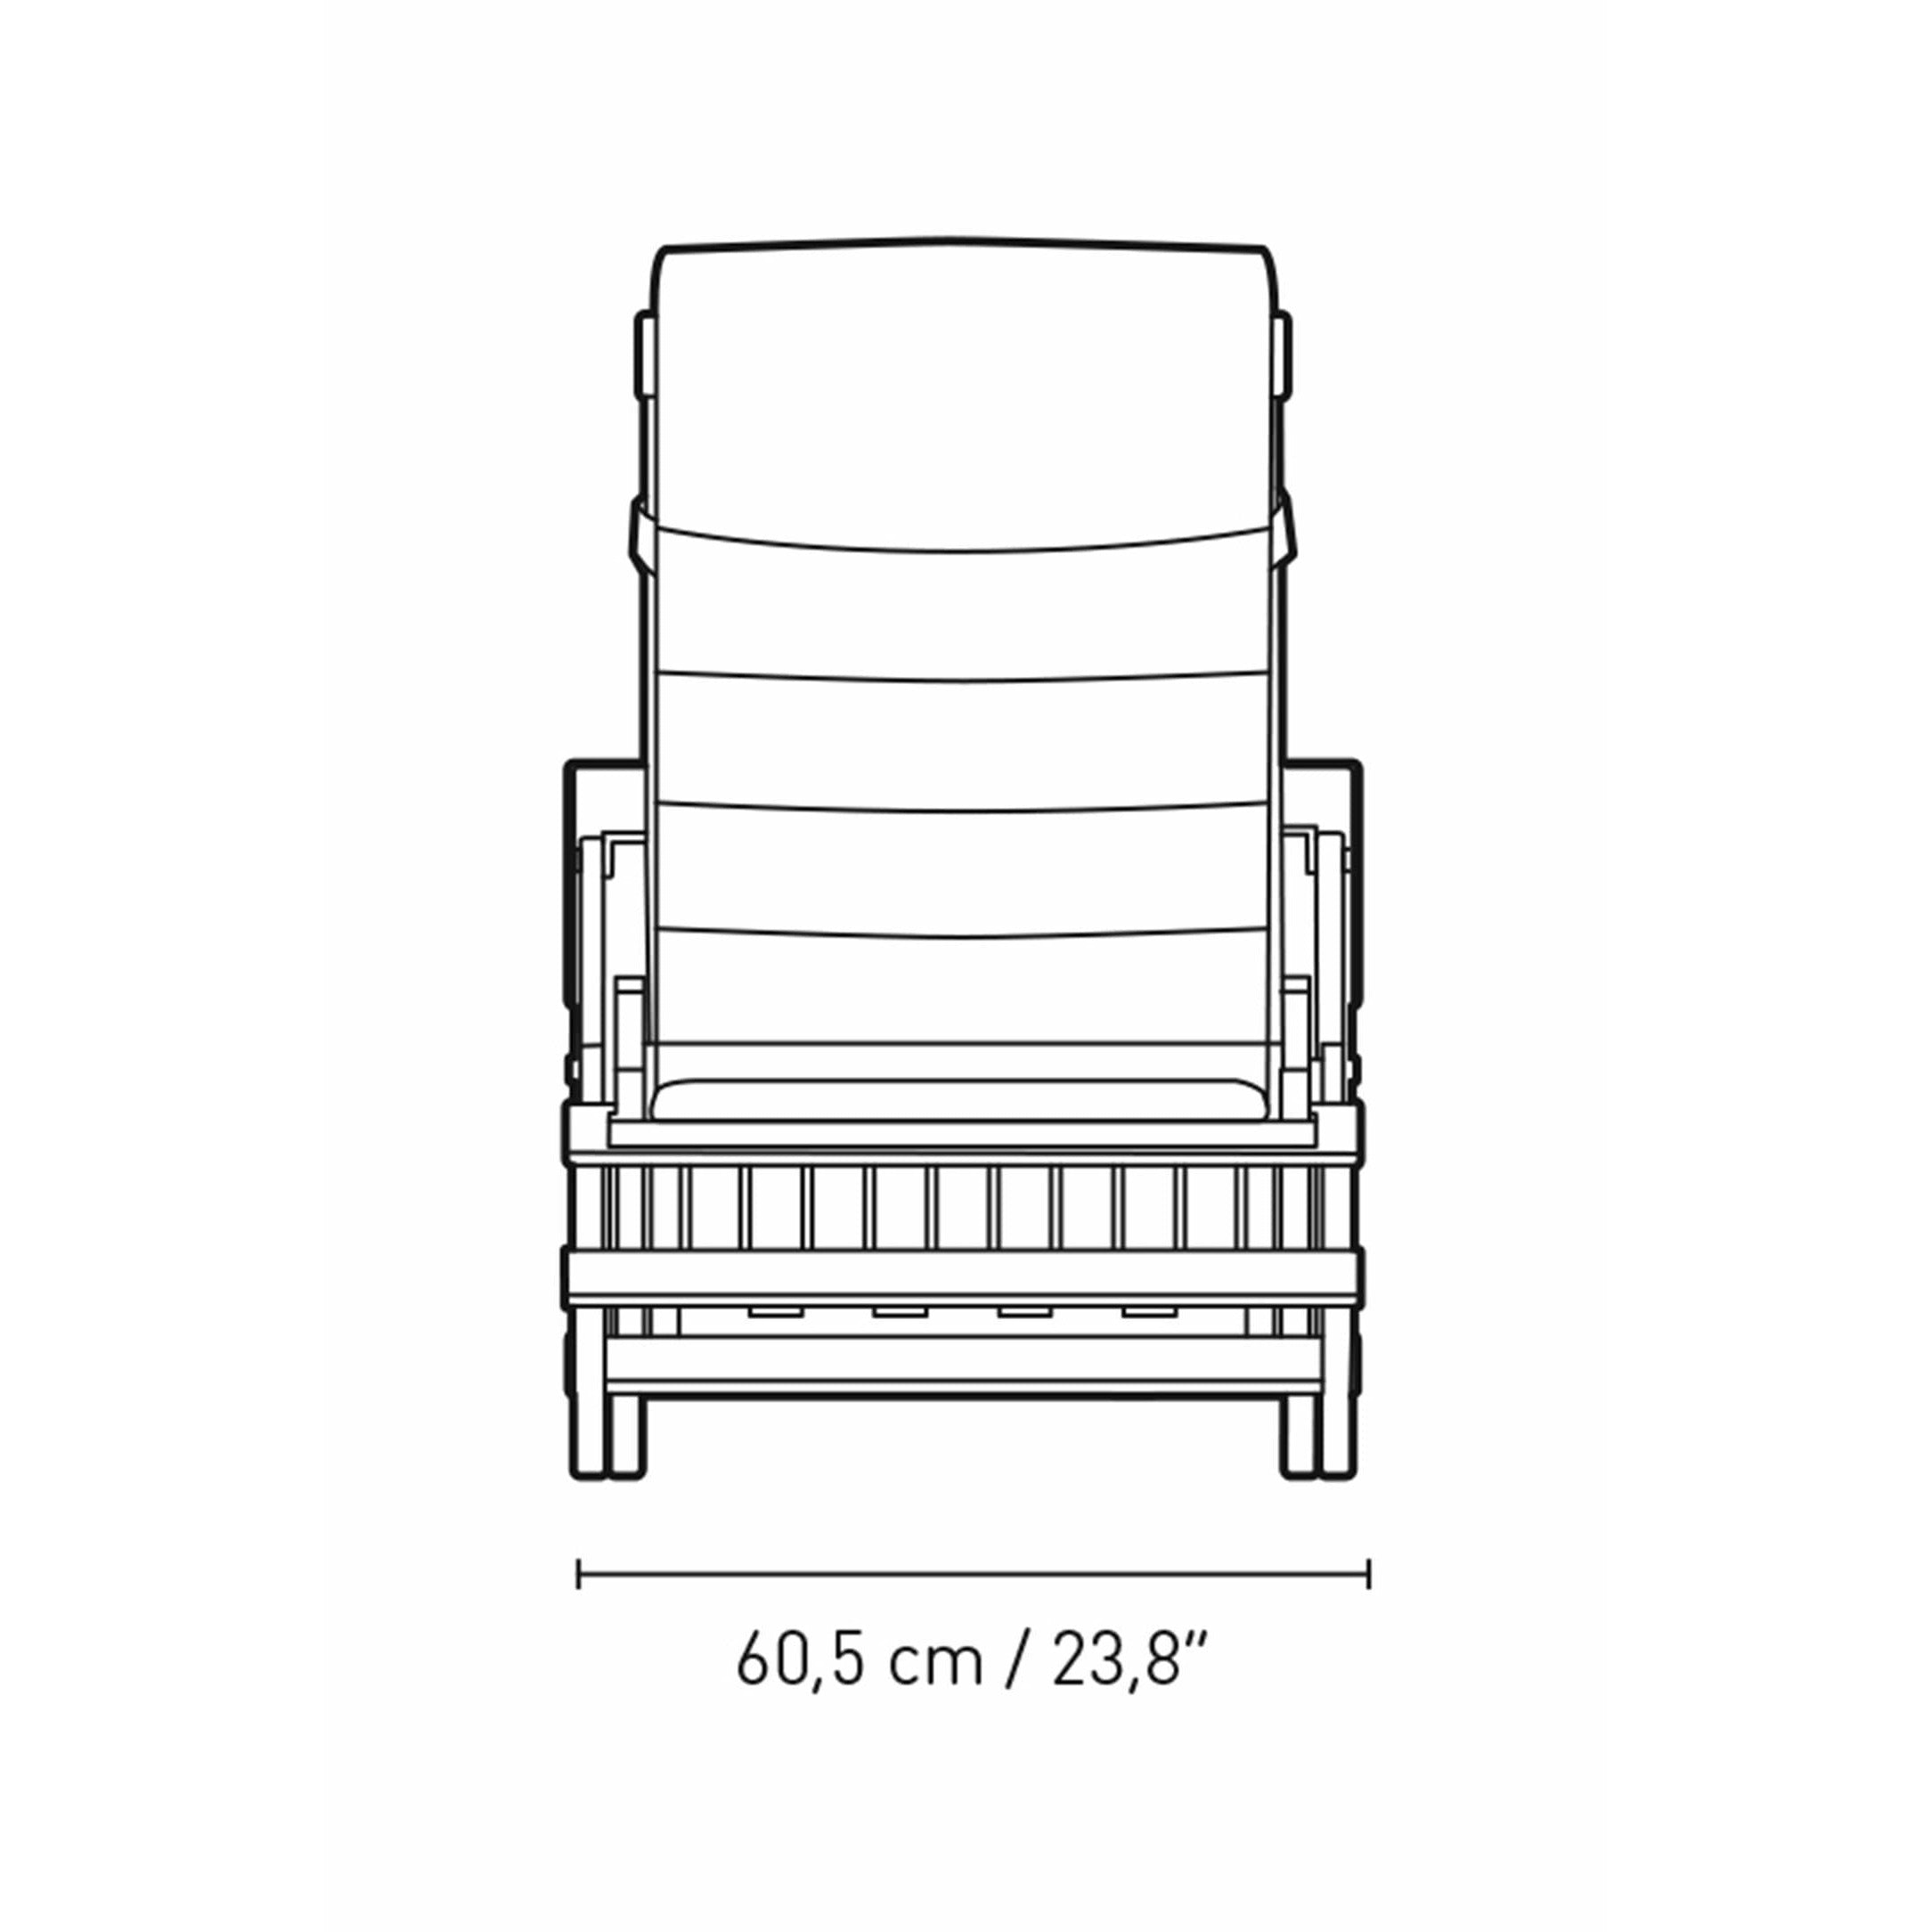 Carl Hansen Cushion For Bm5565 Extended Deck Chair